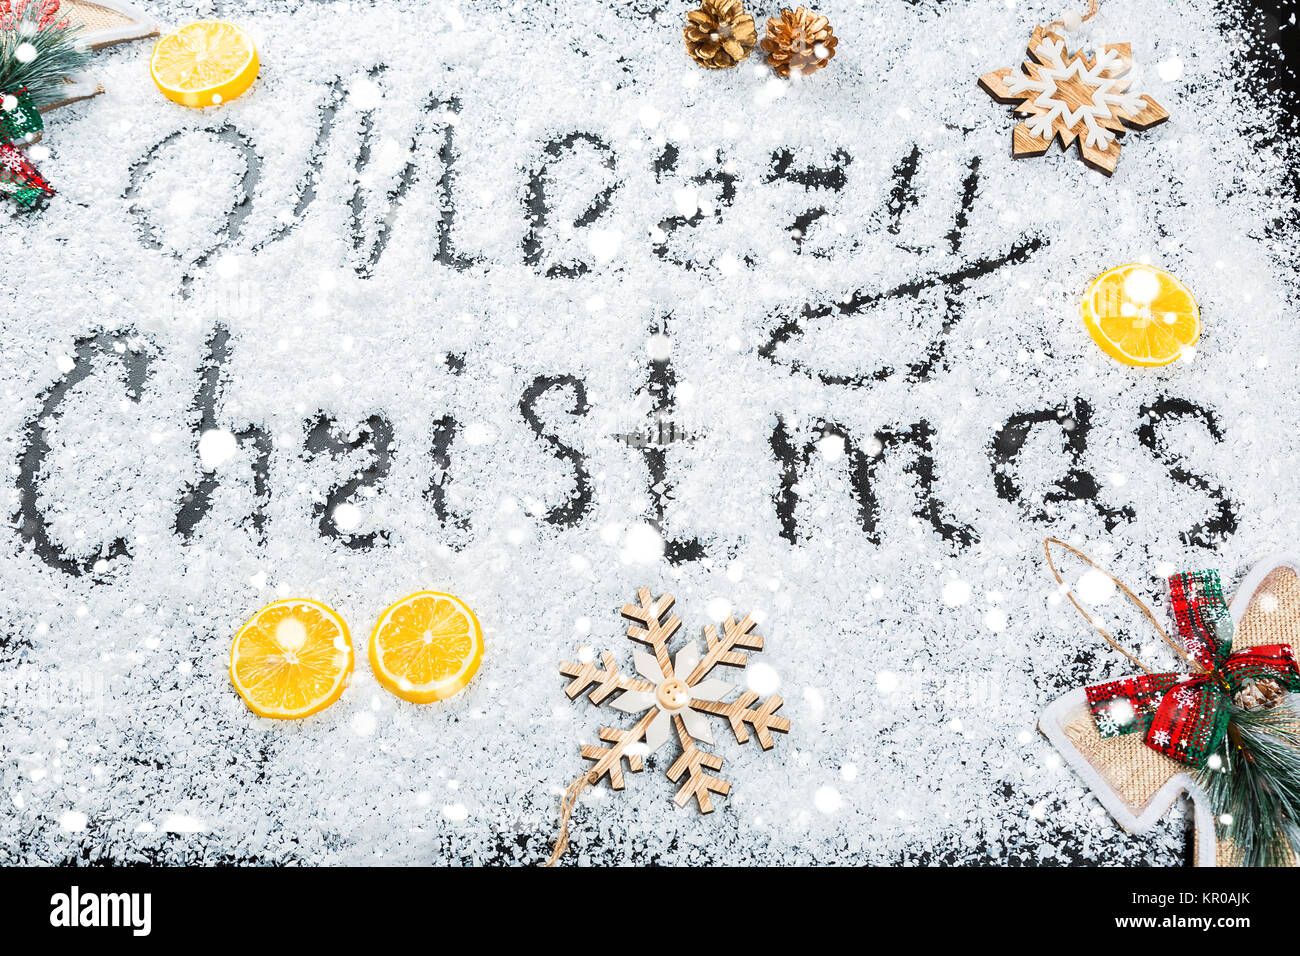 Weihnachten Hintergrund mit der Aufschrift Frohe Weihnachten auf weißem Schnee mit Holzspielzeug, Zitrone, Schneeflocken und Neues Jahr eingerichtet. Winterurlaub Stockfoto